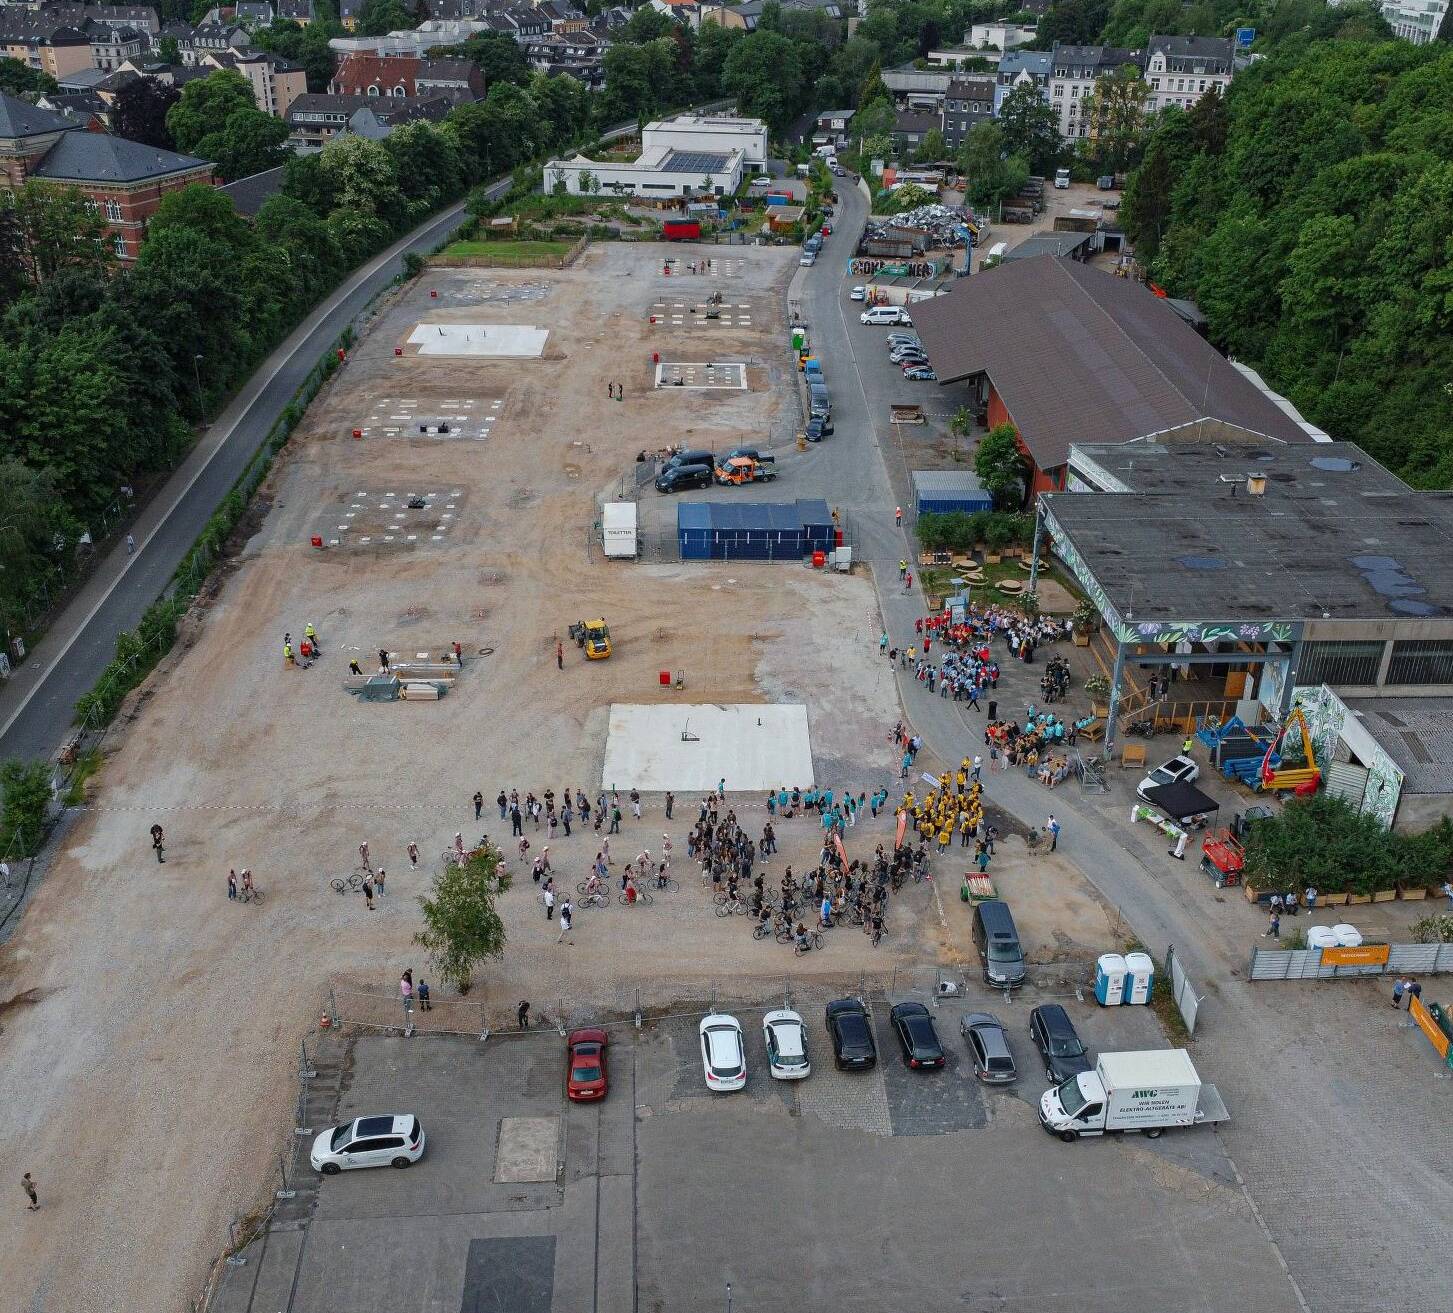 Wuppertal holt Bau-Zukunft in die Gegenwart